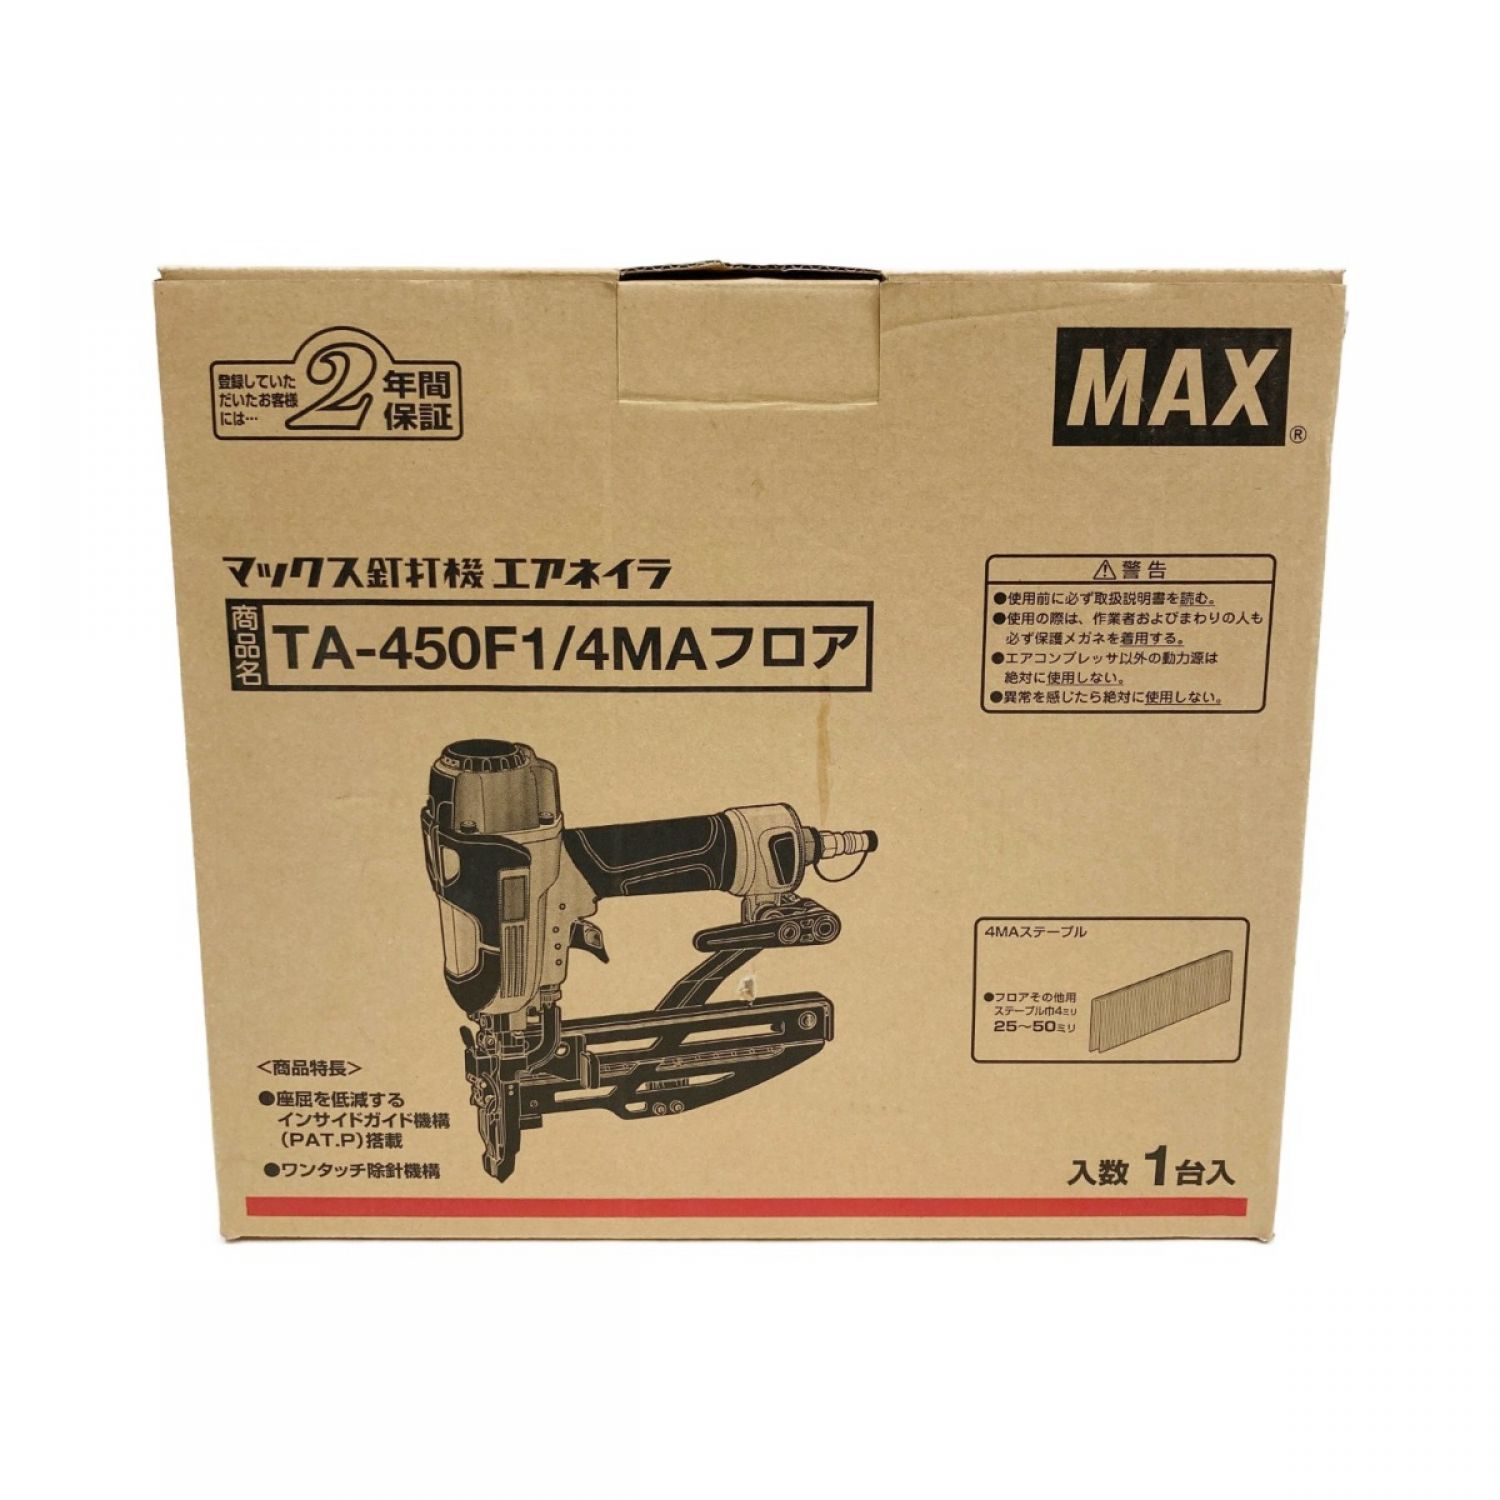 信頼】 MAX マックス 常圧フロア用釘打機 TA-450F1 4MAフロア 常圧